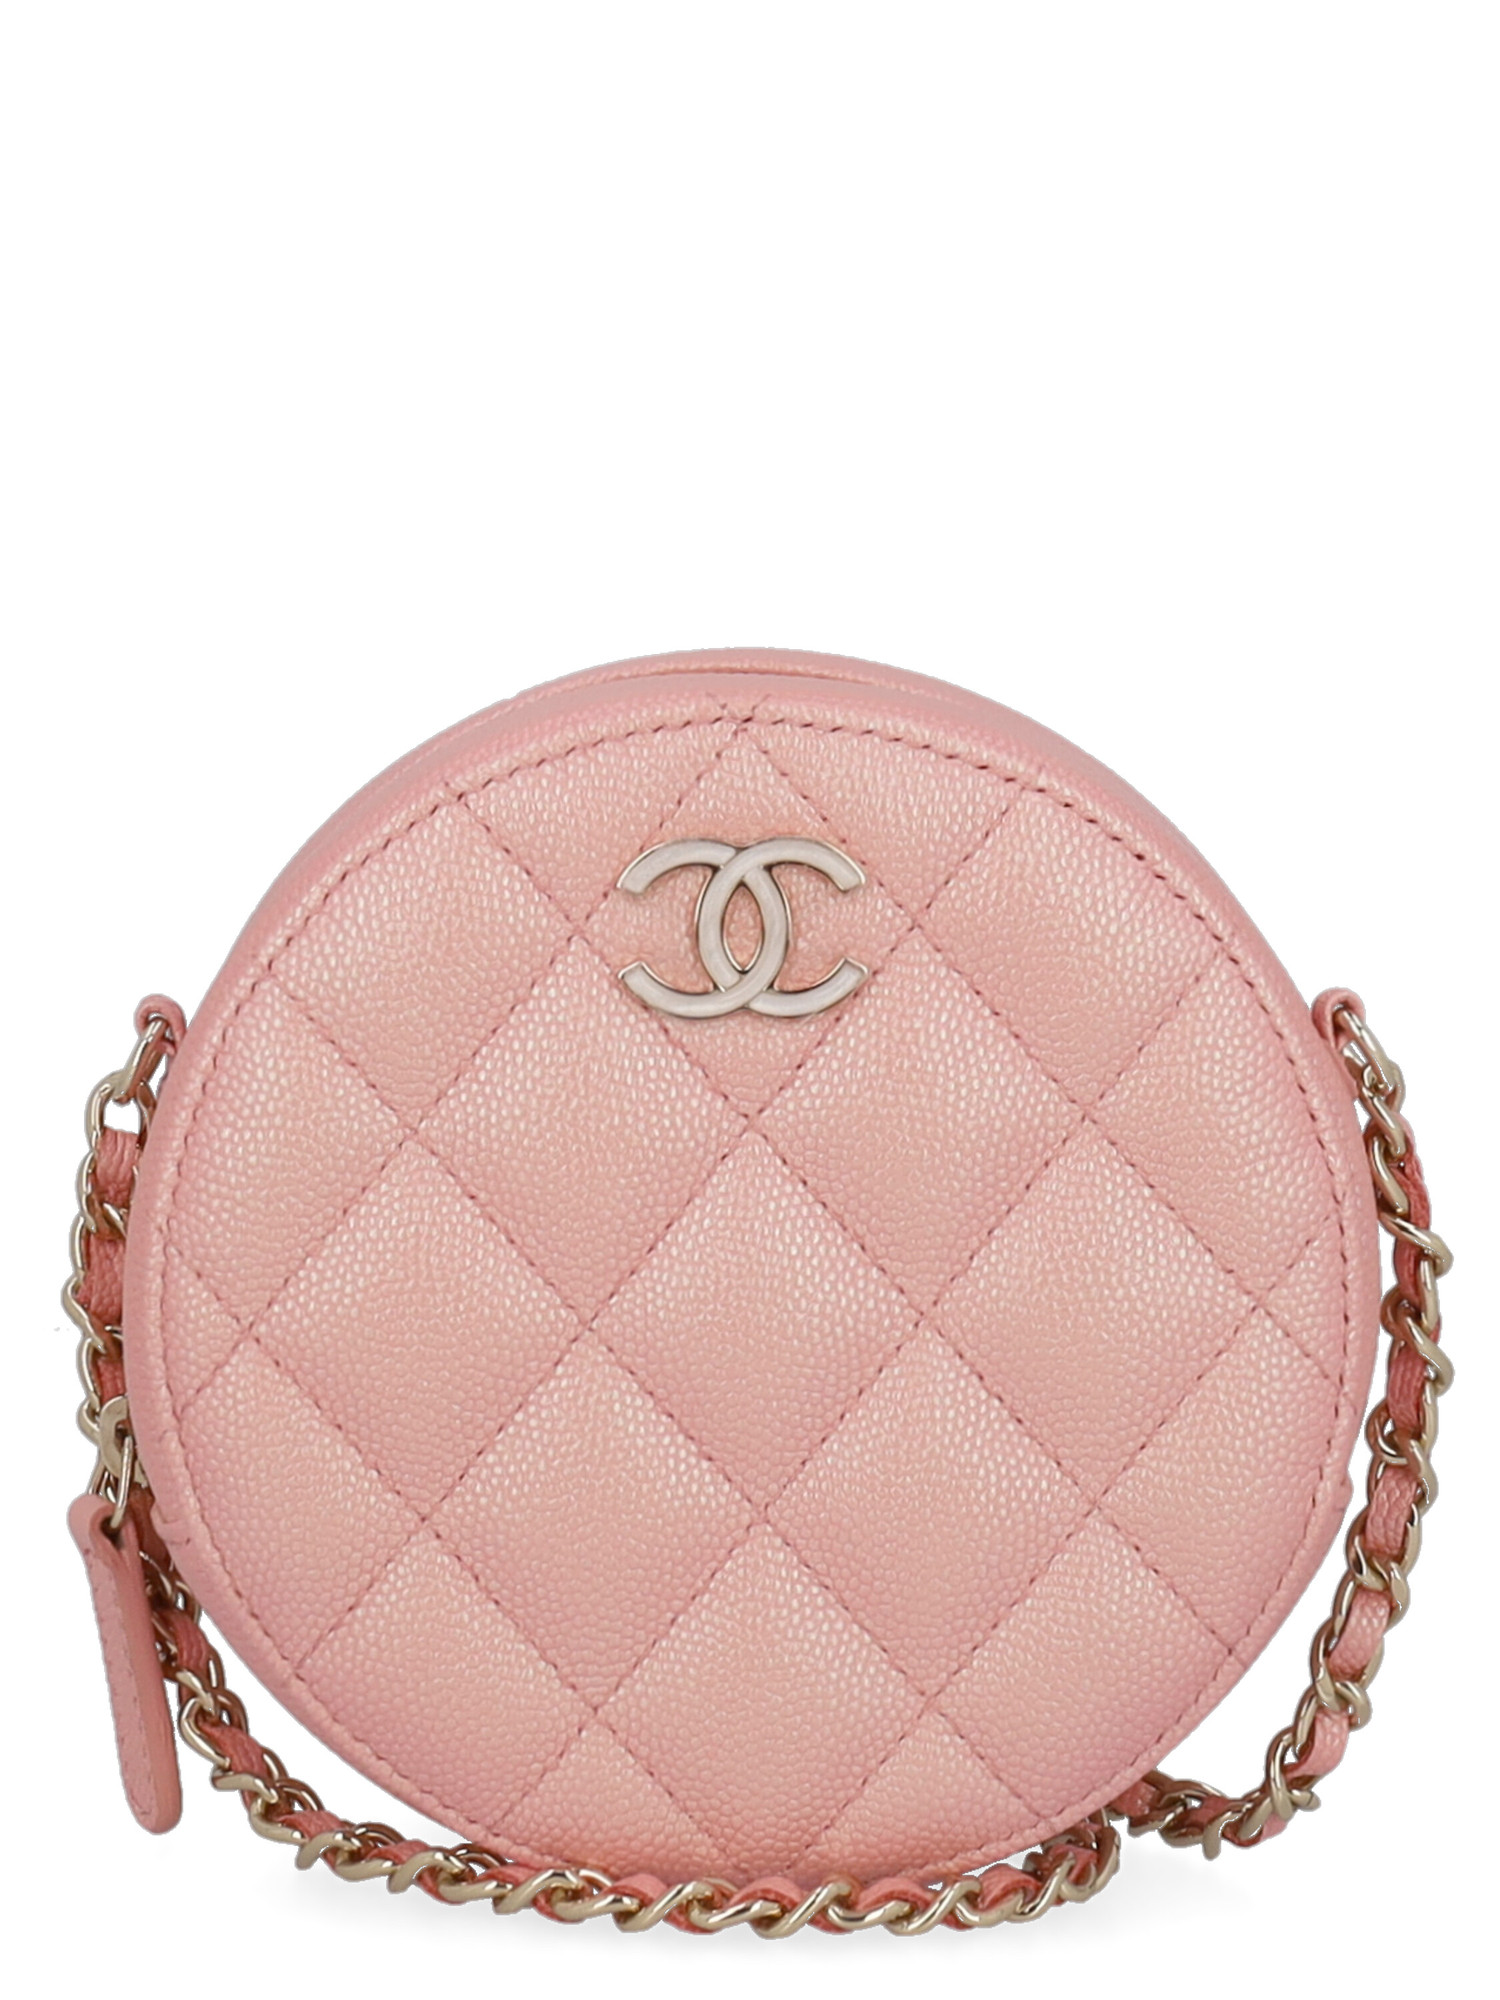 Sacs Porté Épaule Pour Femme - Chanel - En Leather Pink - Taille:  -